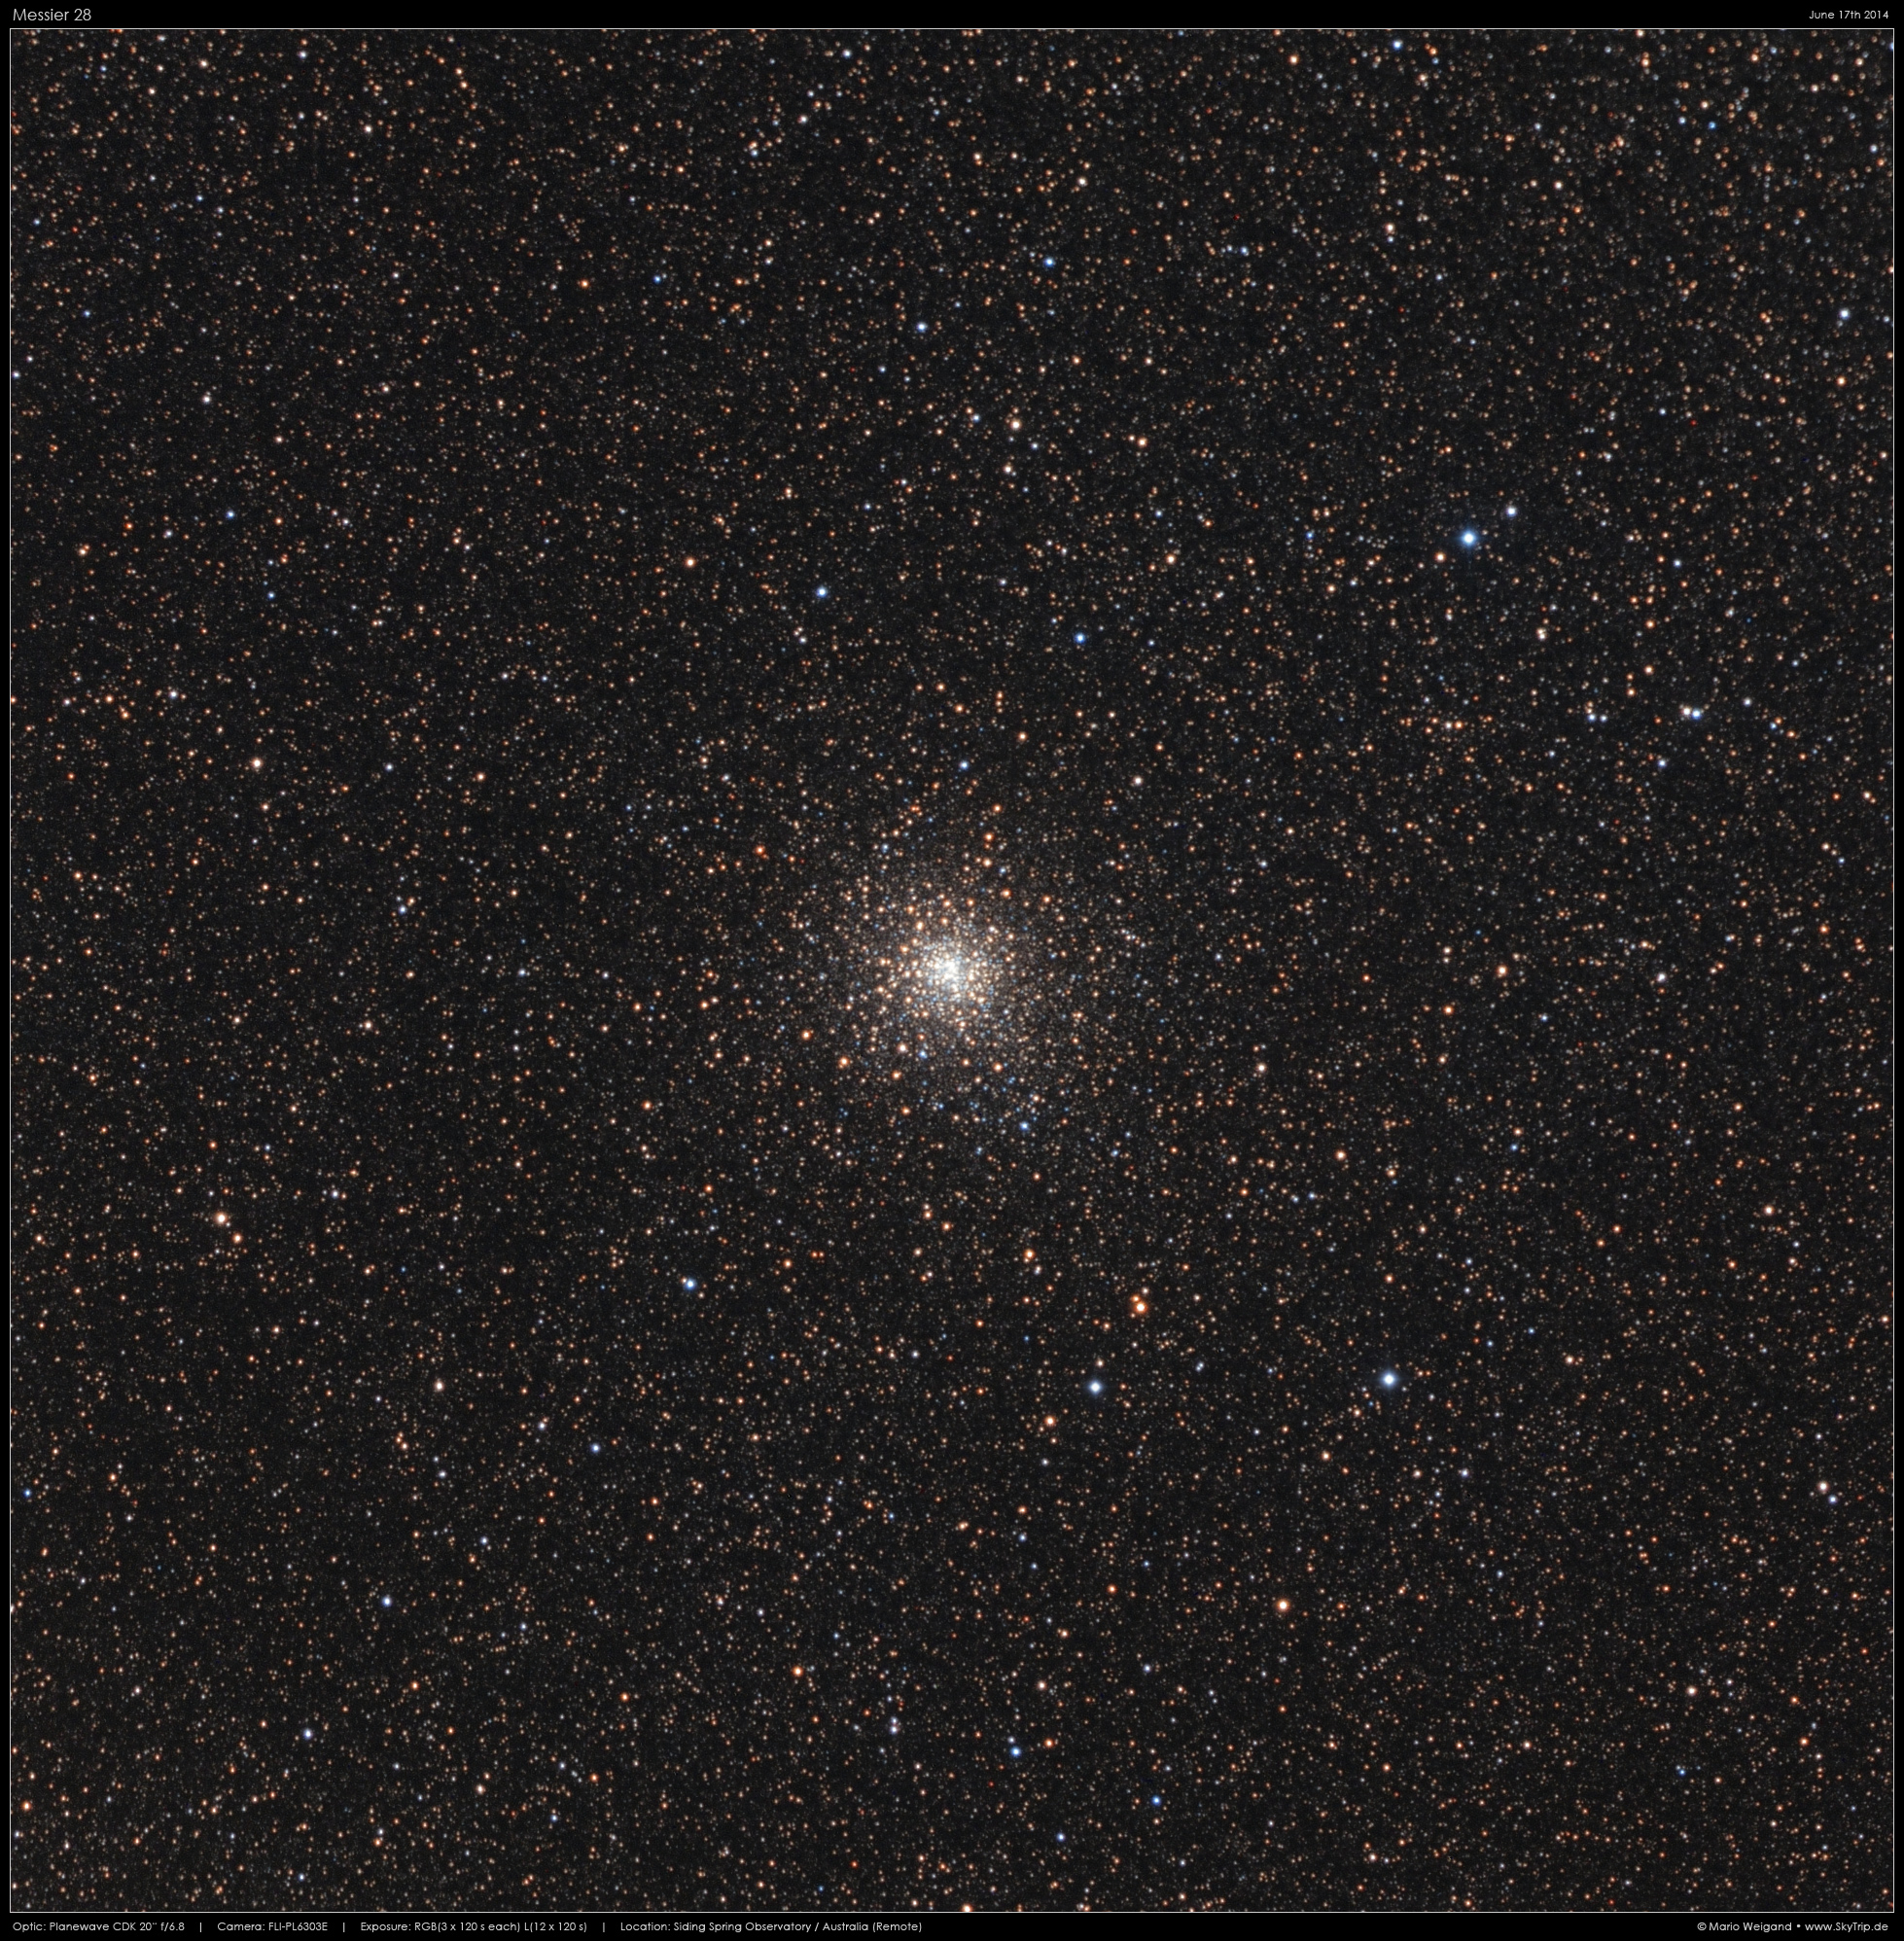 Kugelsternhaufen M28 (NGC 6626)